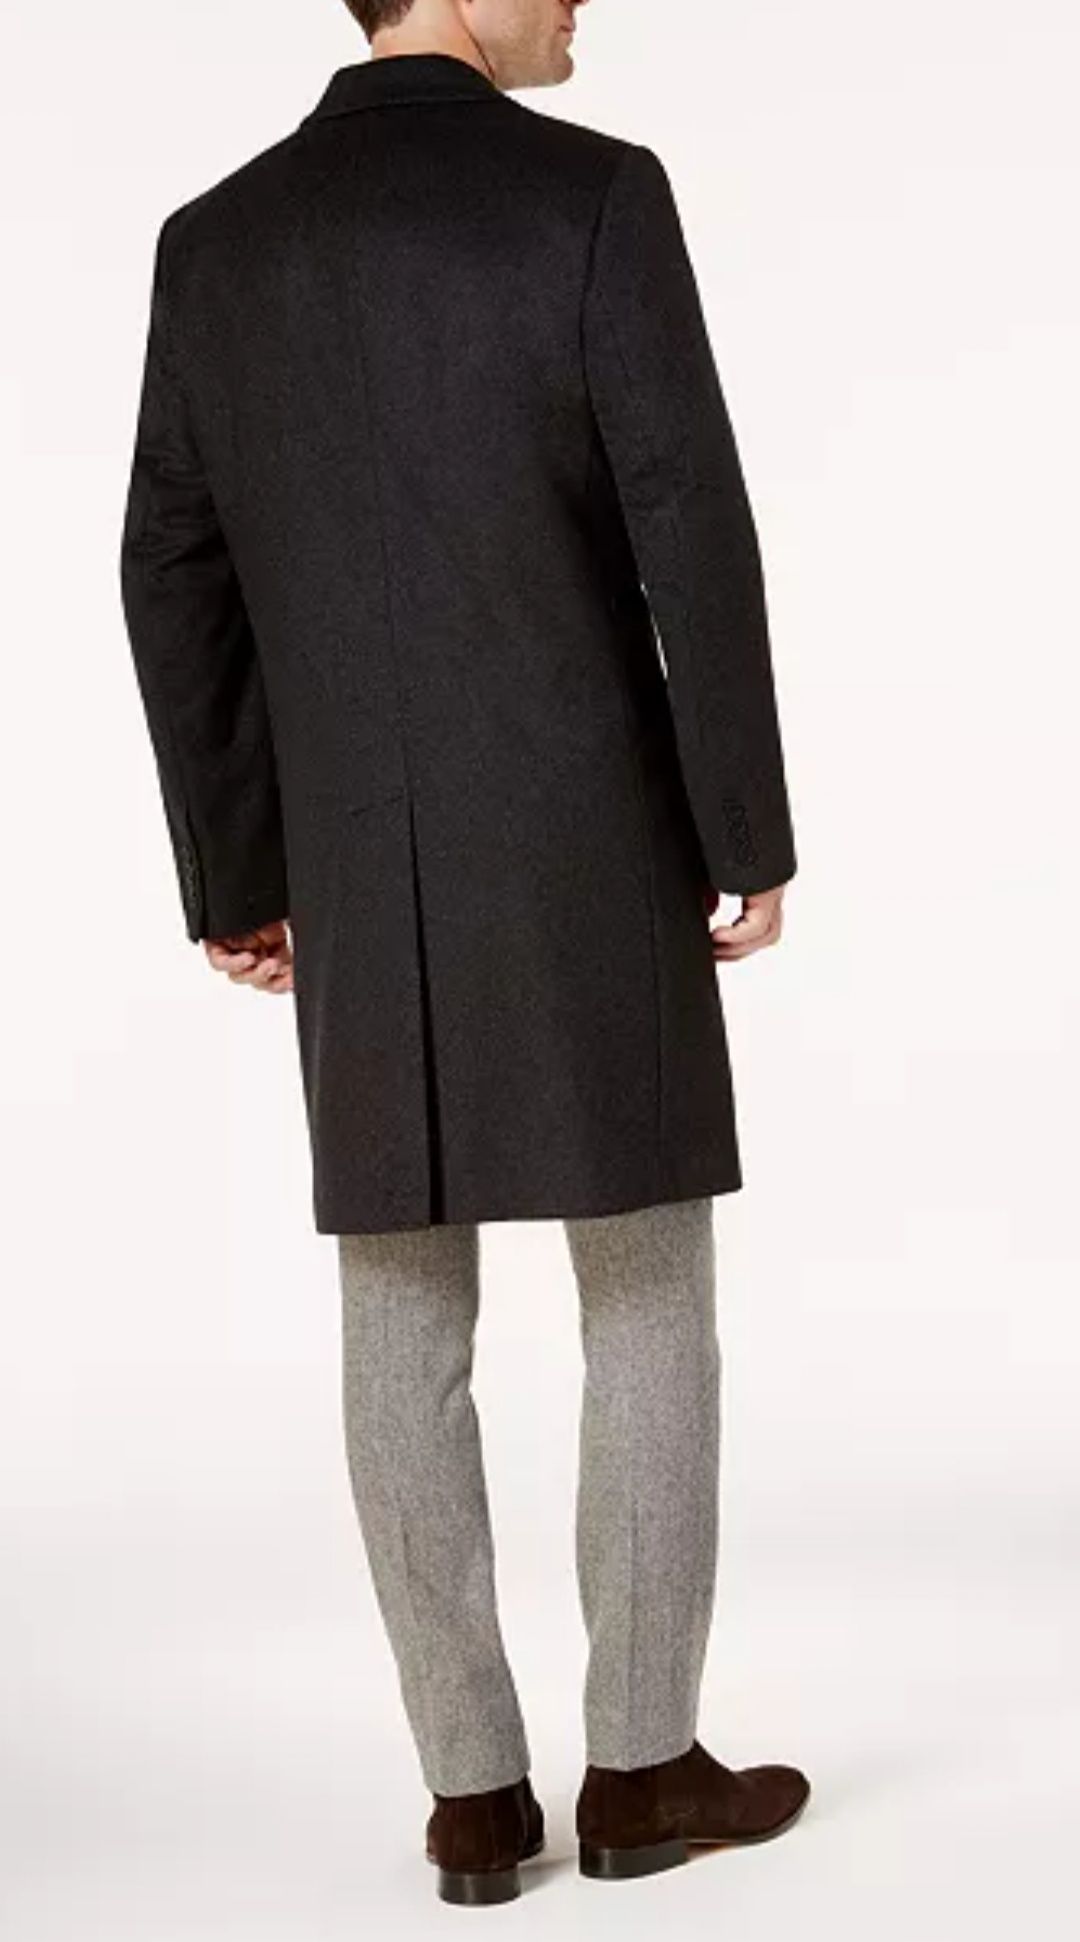 Palton clasic bărbătesc negru lână Michael Kors, măsură mare-XXL-48R